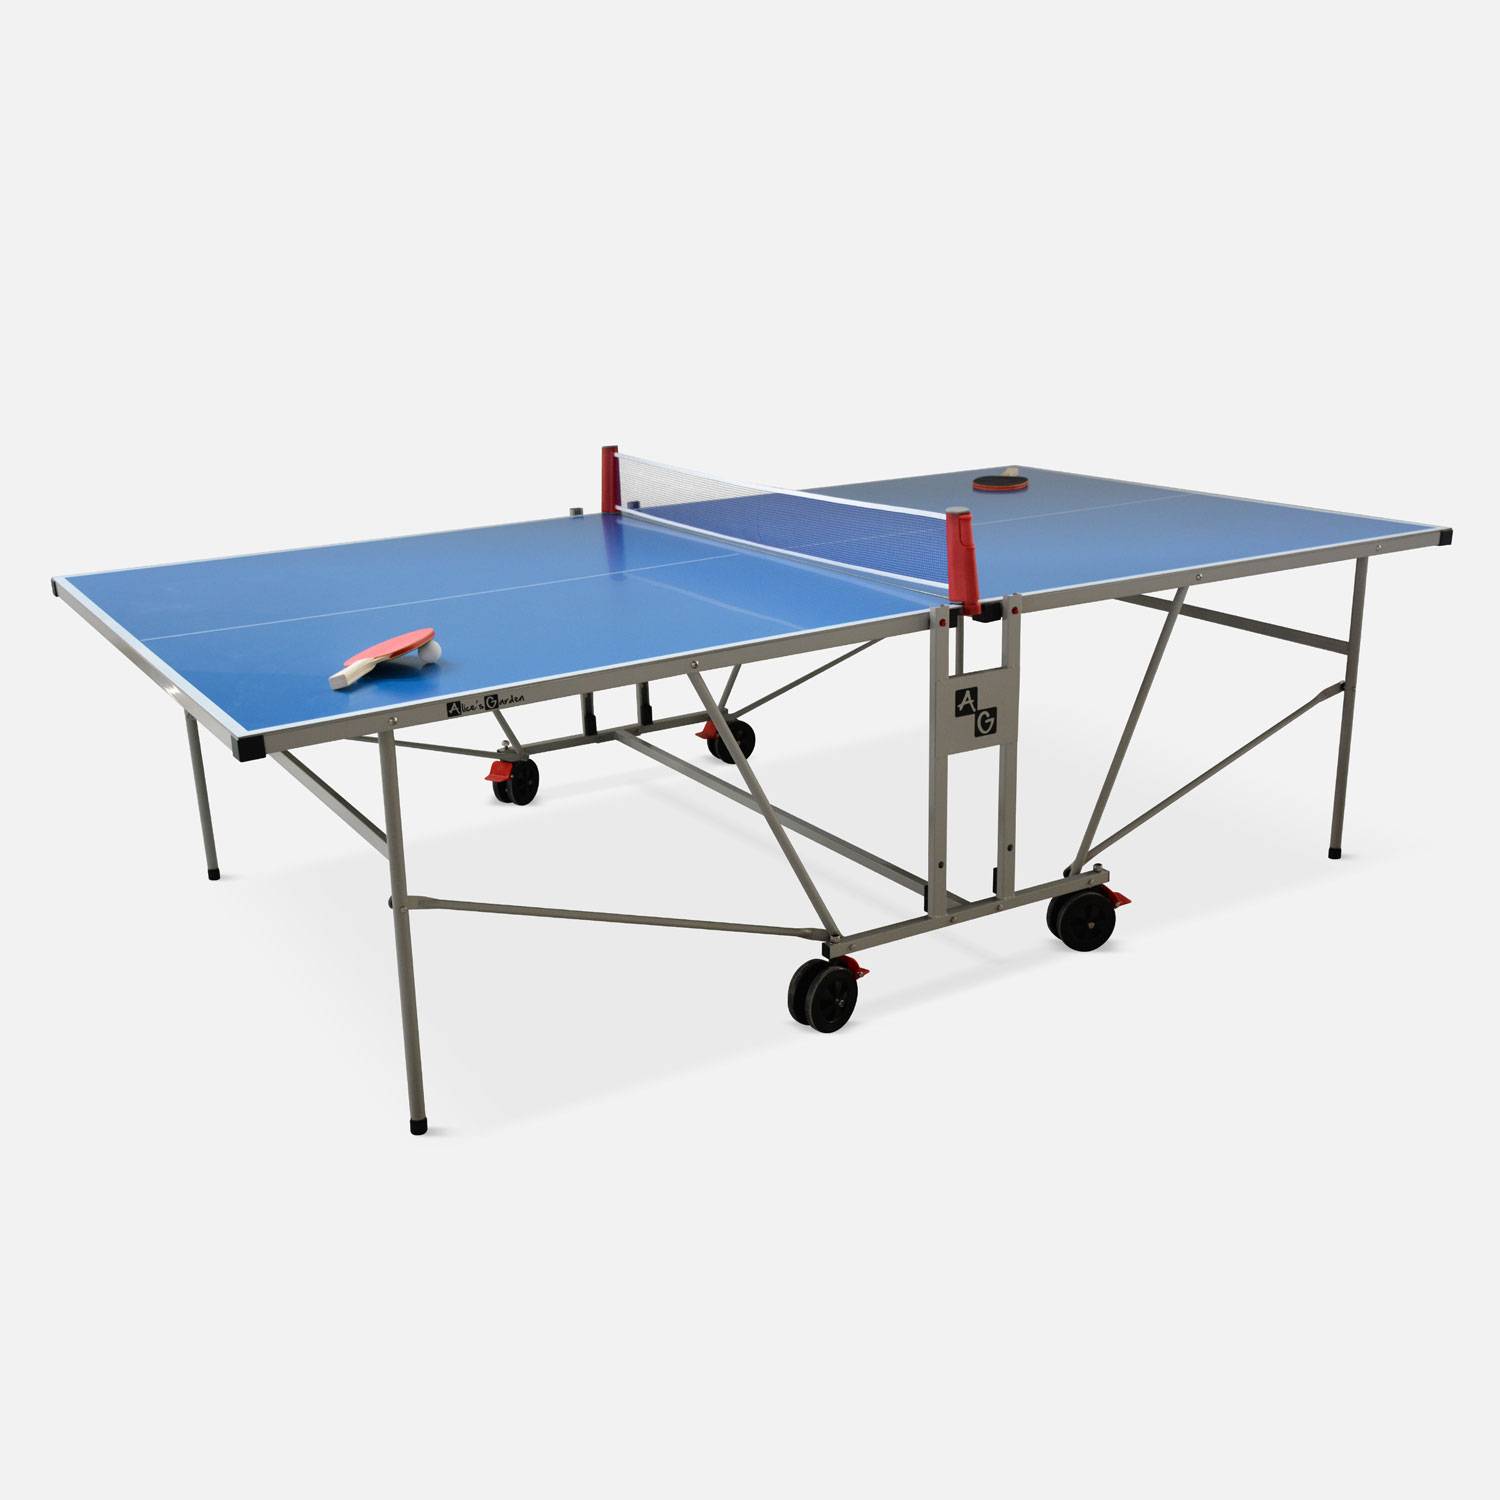 Table de ping pong OUTDOOR bleue, avec 4 raquettes et 6 balles, pour utilisation extérieure, sport tennis de table Photo2